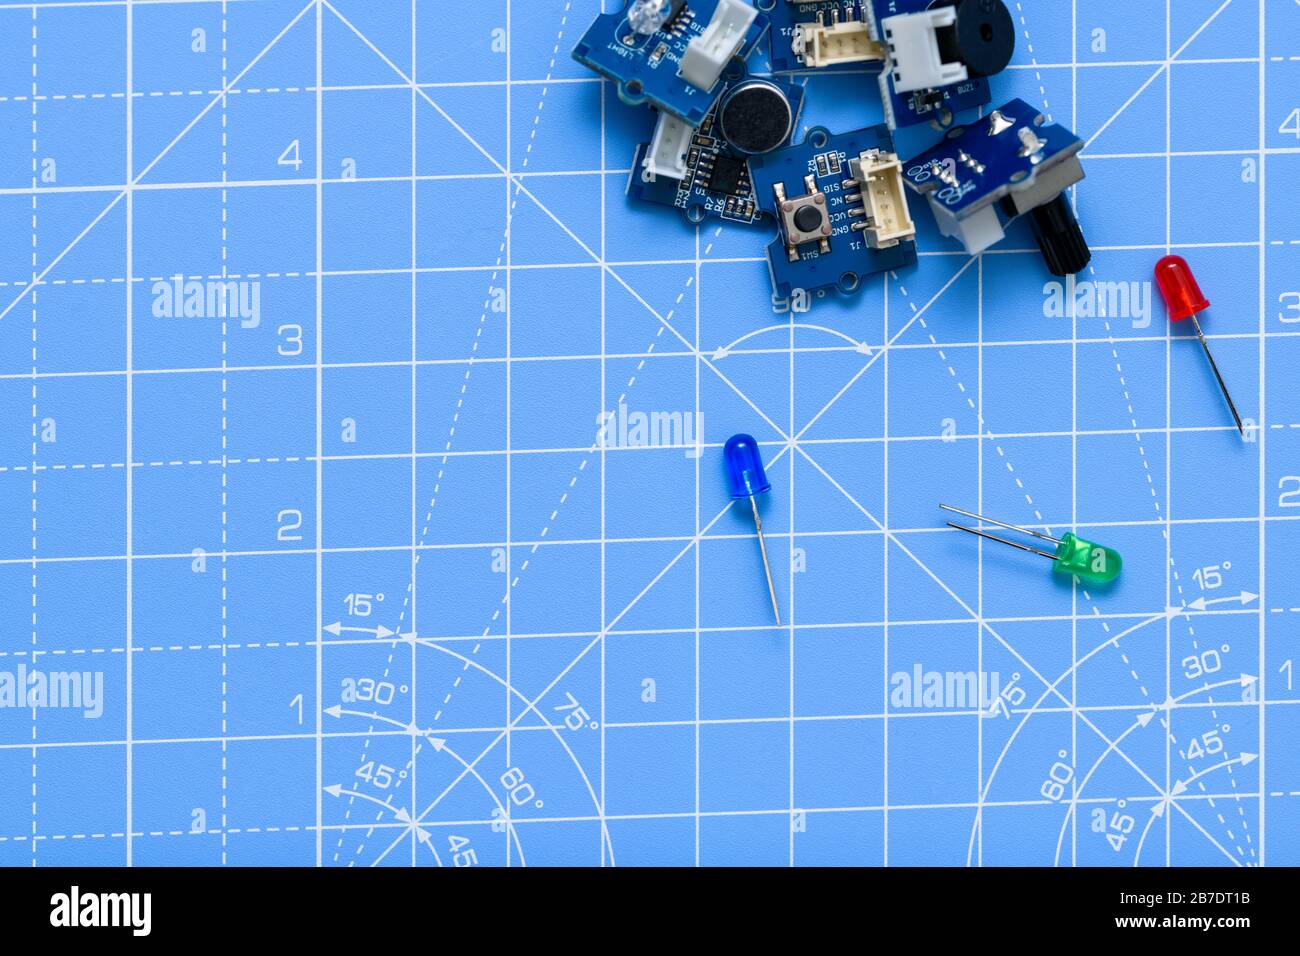 Circuiti stampati e componenti elettrici a LED blu, gree e rossi su sfondo blu. Concetto di elettronica, scienza, industria, hobby o istruzione. Foto Stock